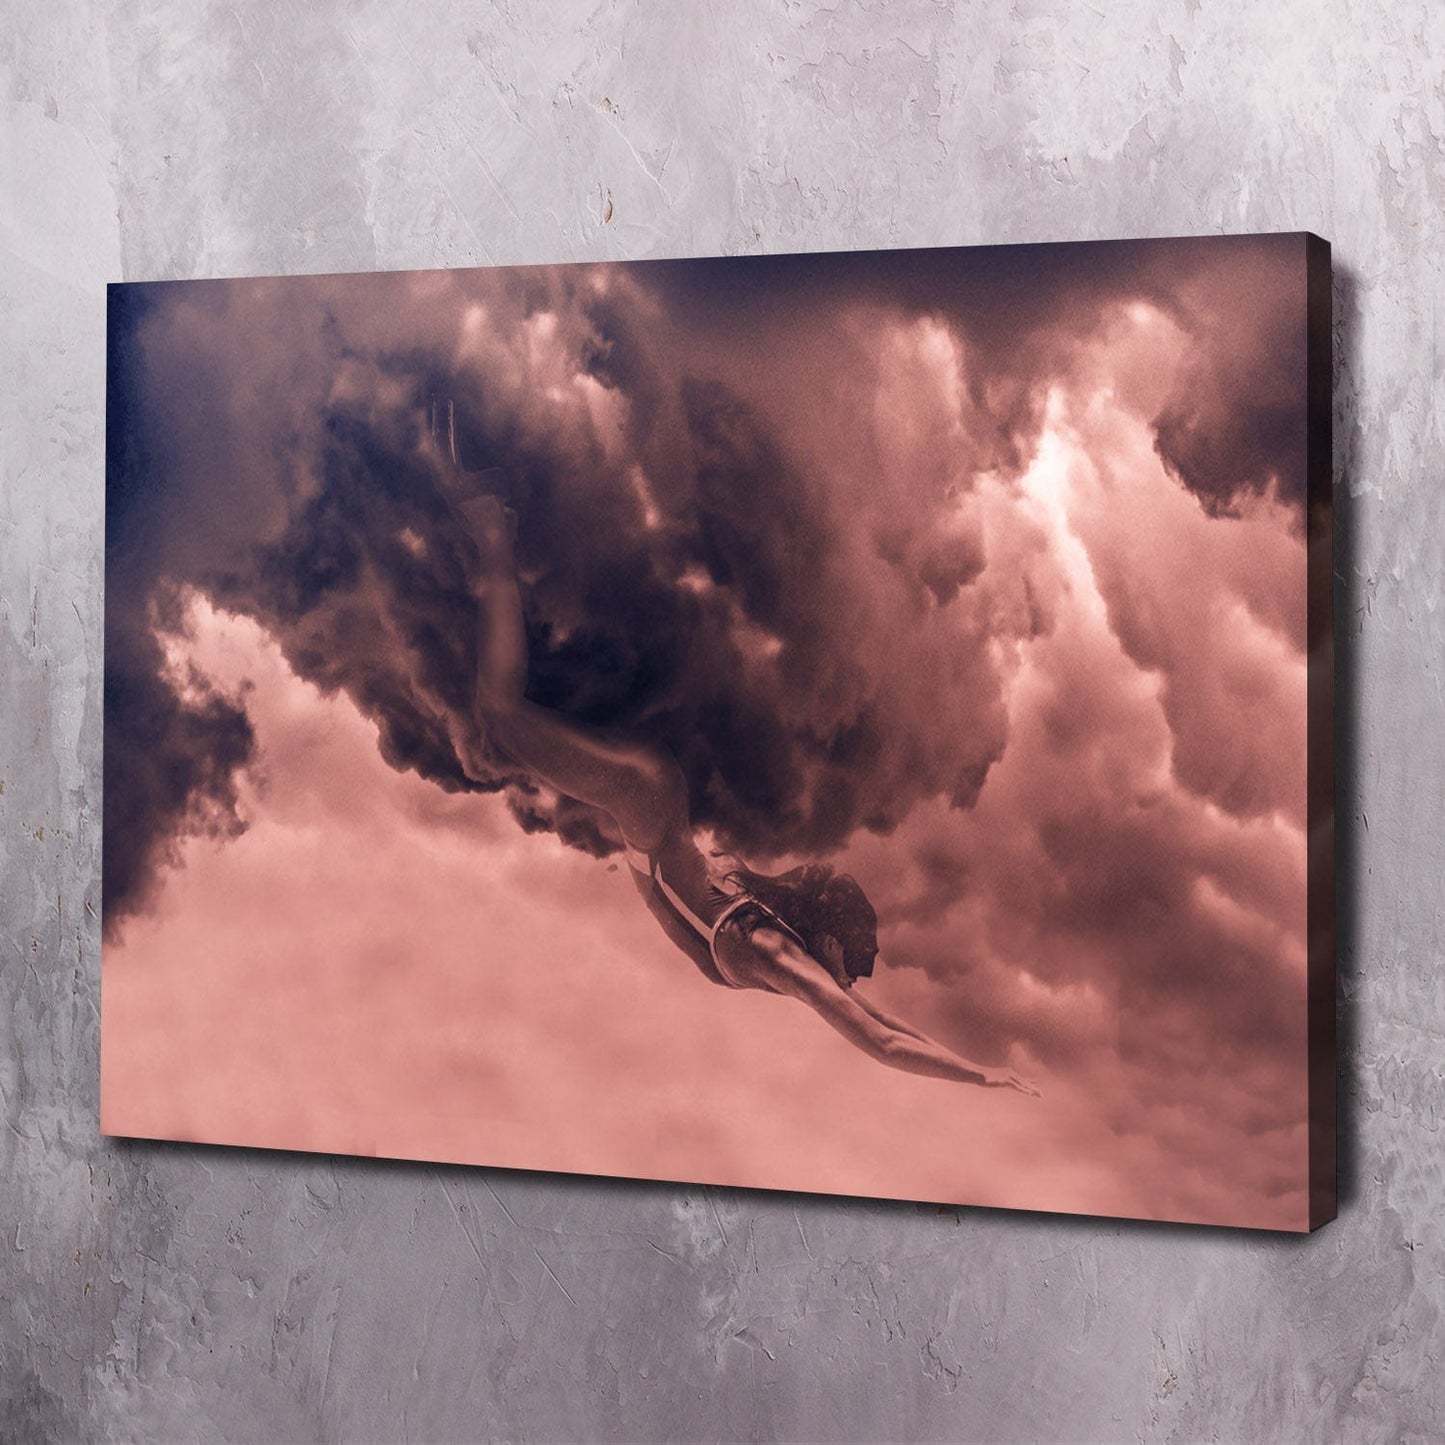 Cloud Diver Wall Art | Inspirational Wall Art Motivational Wall Art Quotes Office Art | ImpaktMaker Exclusive Canvas Art Landscape